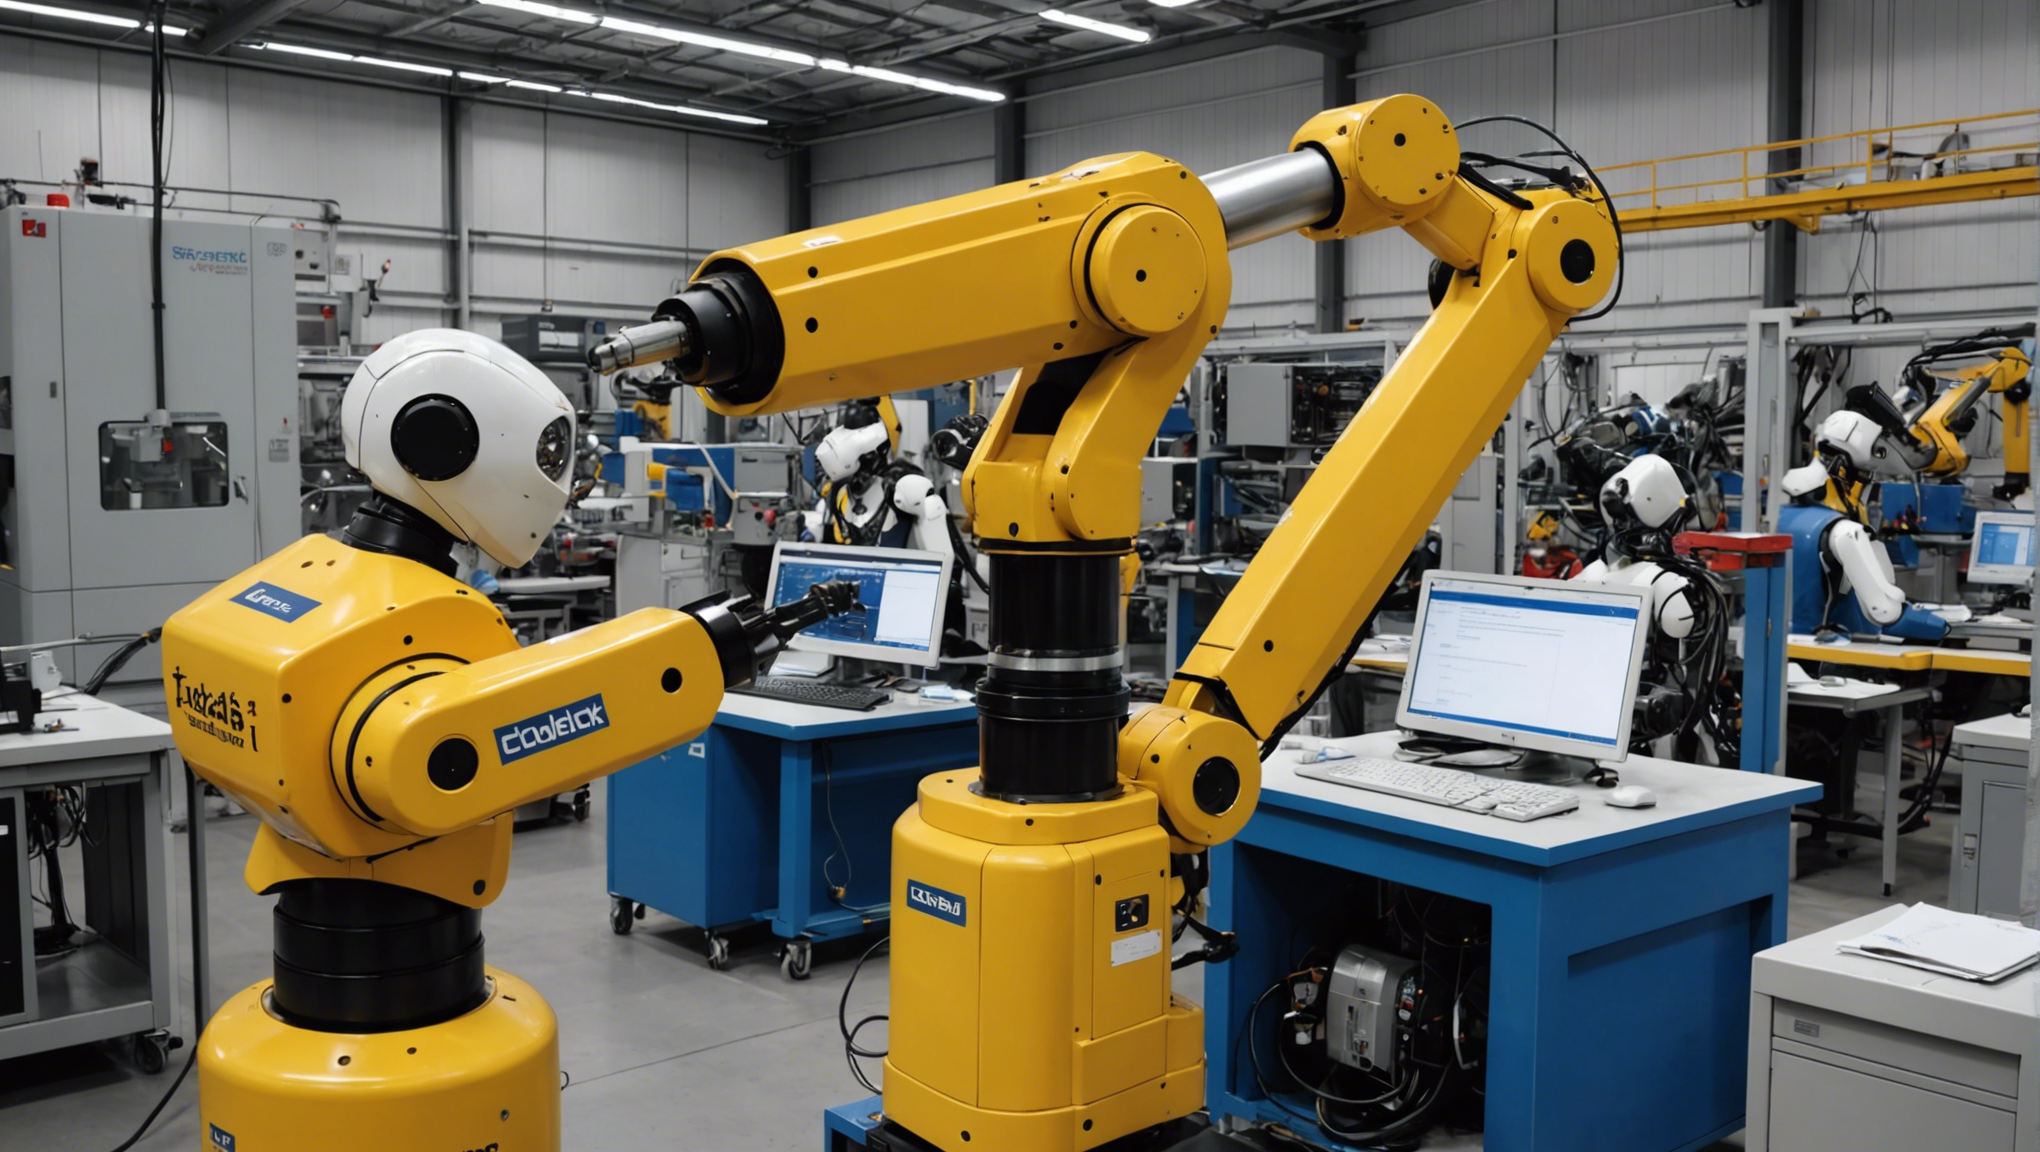 découvrez l'avènement d'une deuxième vague avec les robots industriels et leur impact sur la productivité et l'efficacité des processus de fabrication.